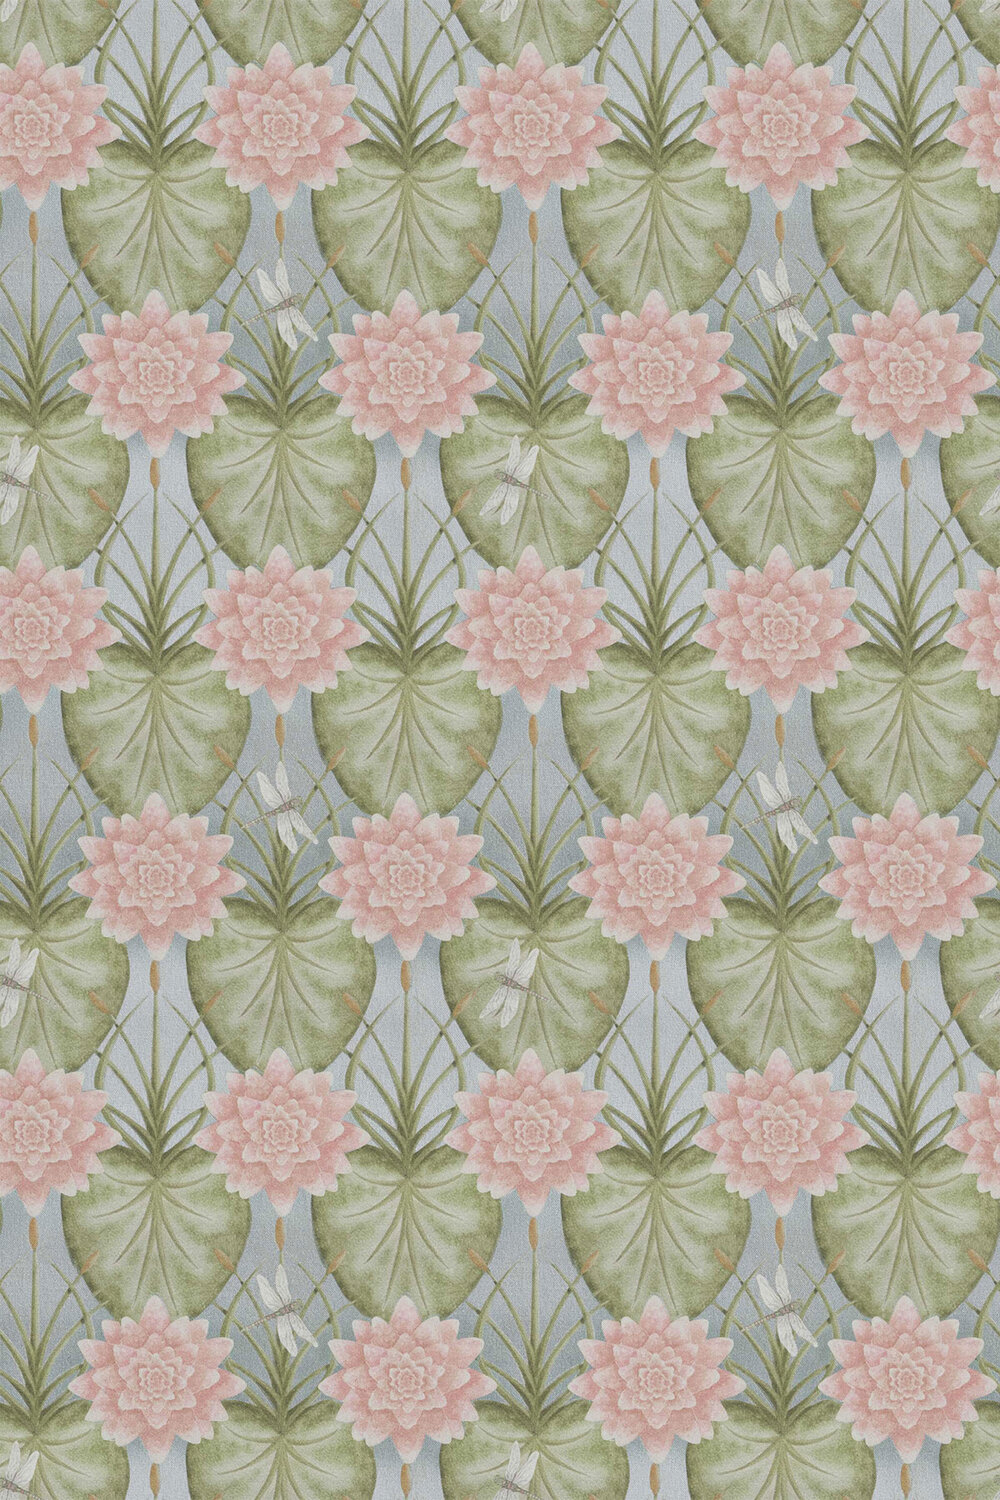 Lily Garden Fabric - Eau De Nil - by The Chateau by Angel Strawbridge